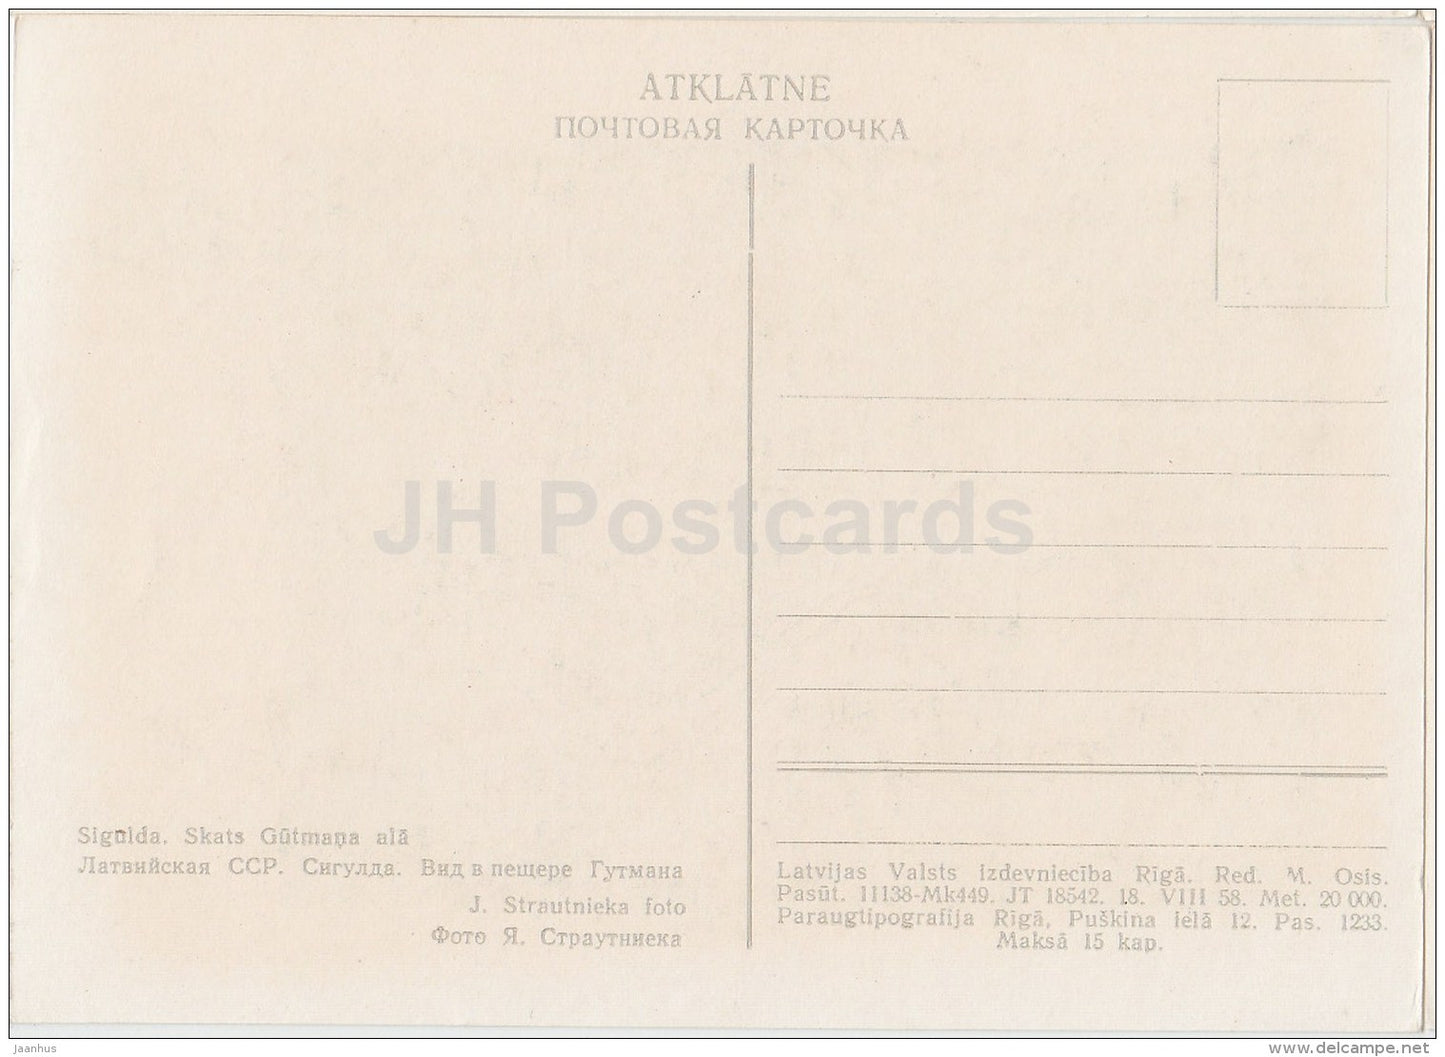 Gutman cave - Sigulda - old postcard - Latvia USSR - unused - JH Postcards